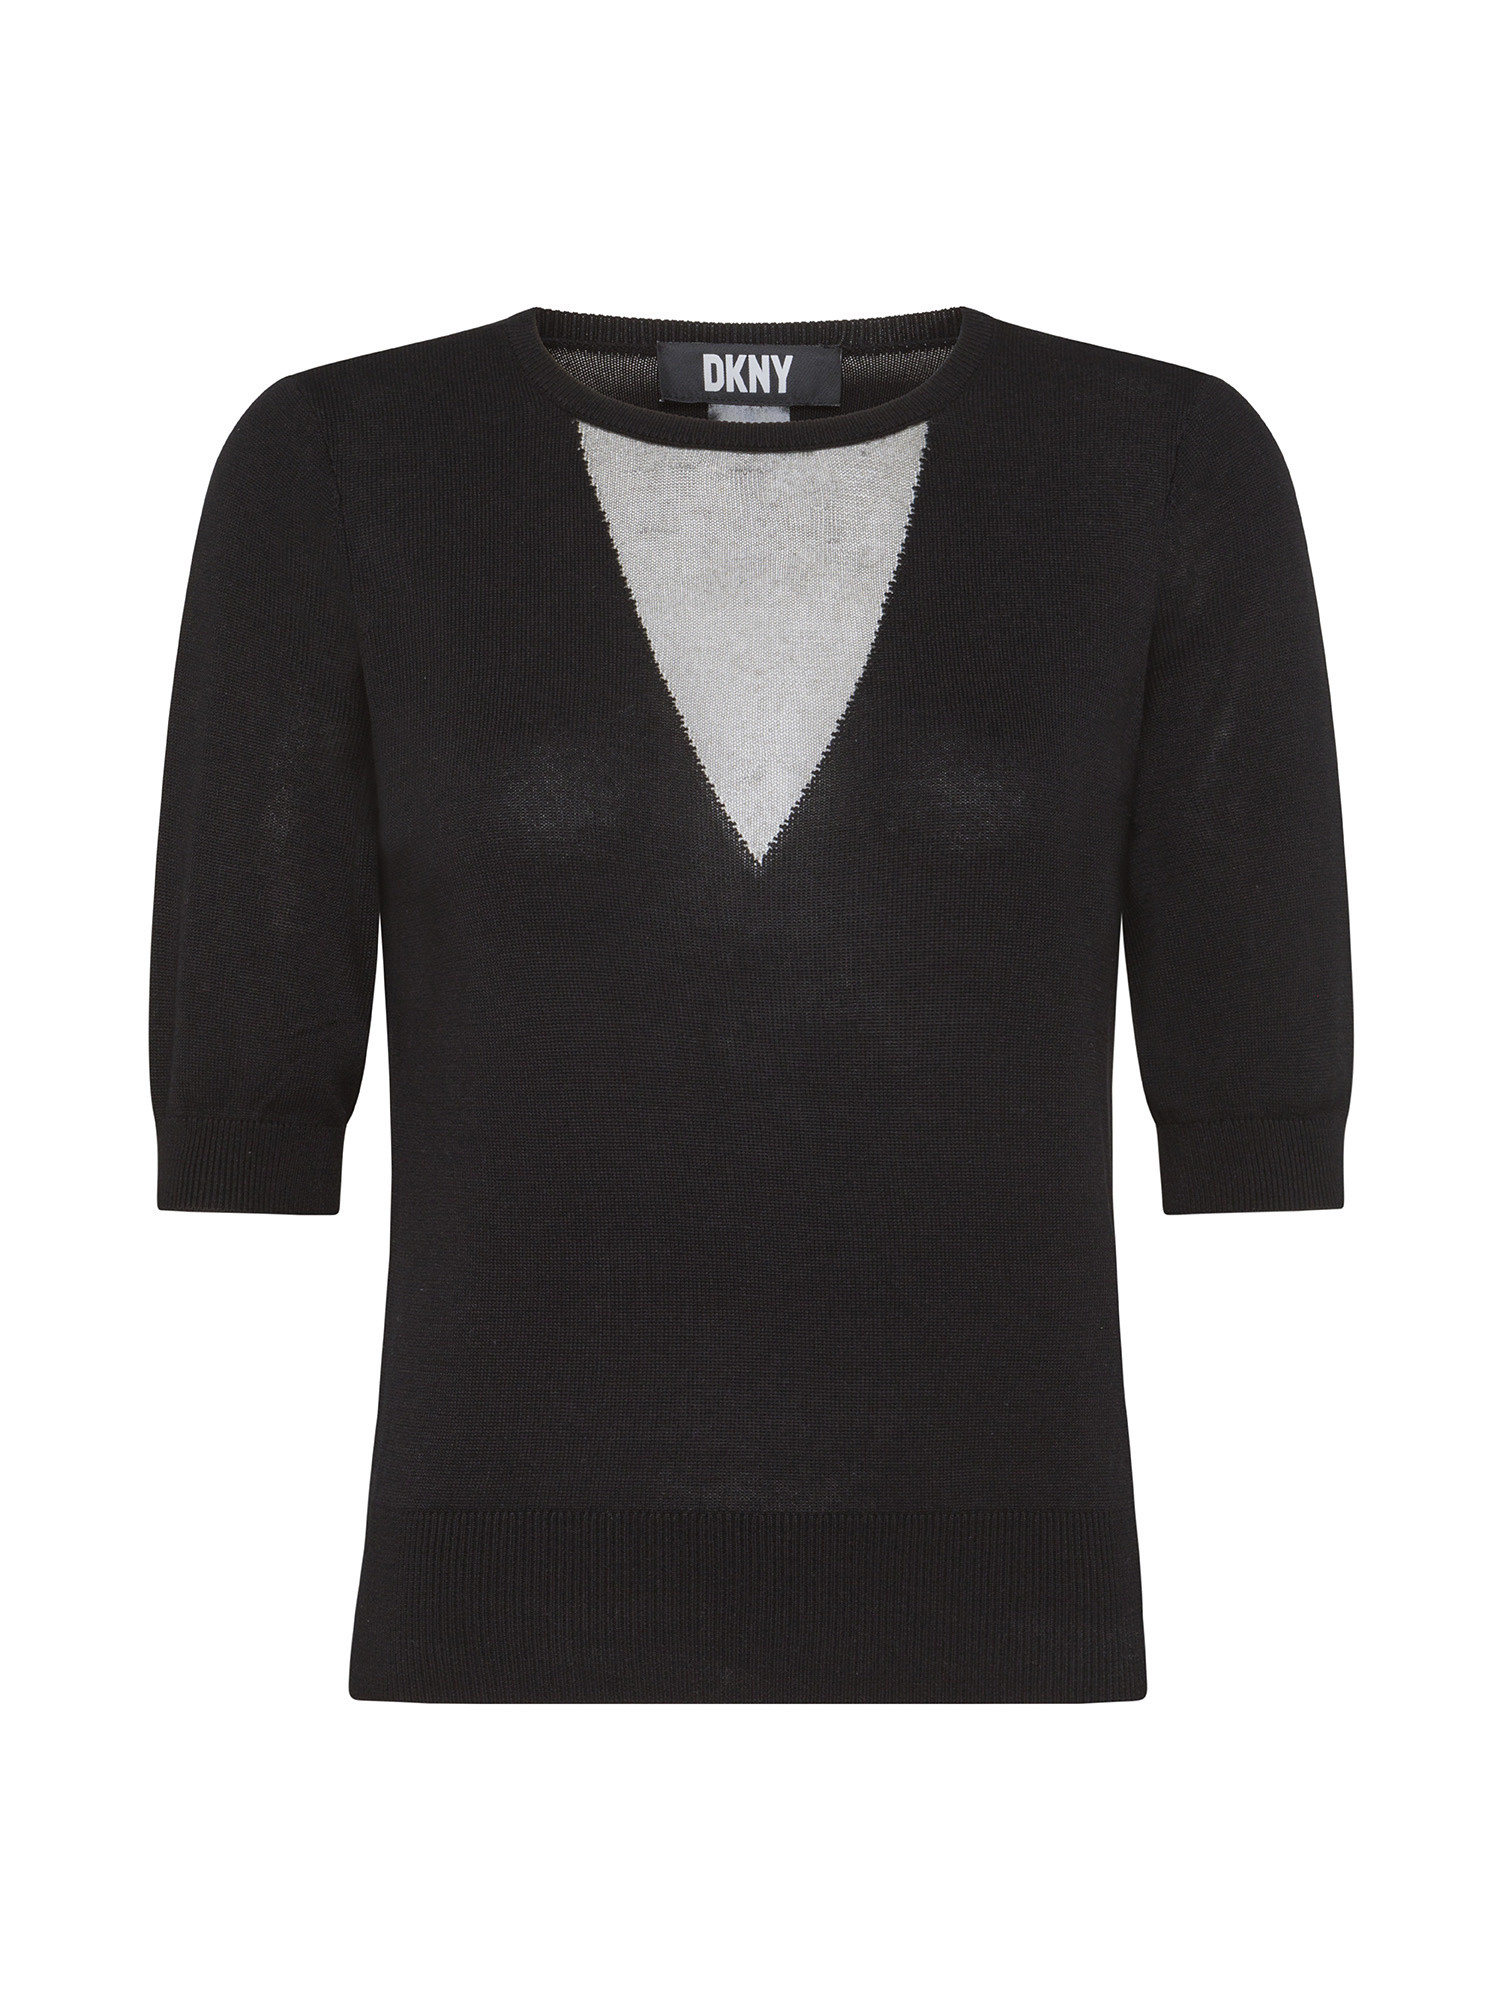 DKNY - V-neck sweater, Black, large image number 0